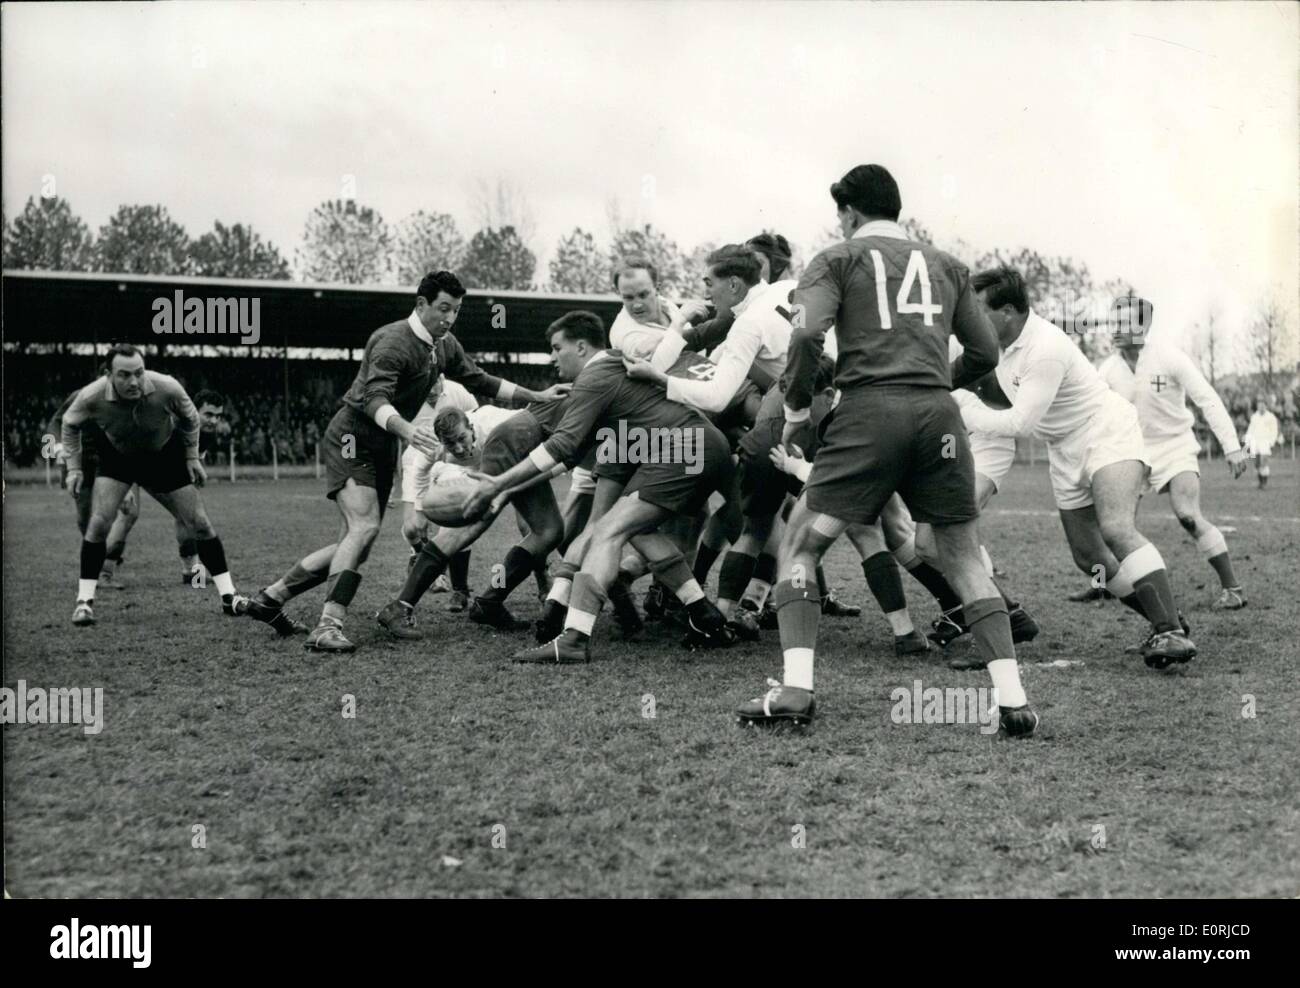 15. November 1959 - Rugby: London schlägt Paris 8-6: The London Rugby Team schlagen Paris um 05:52 am Charlety Stadion, Paris, heute. Das Foto zeigt einen Vorfall des Spiels. Stockfoto